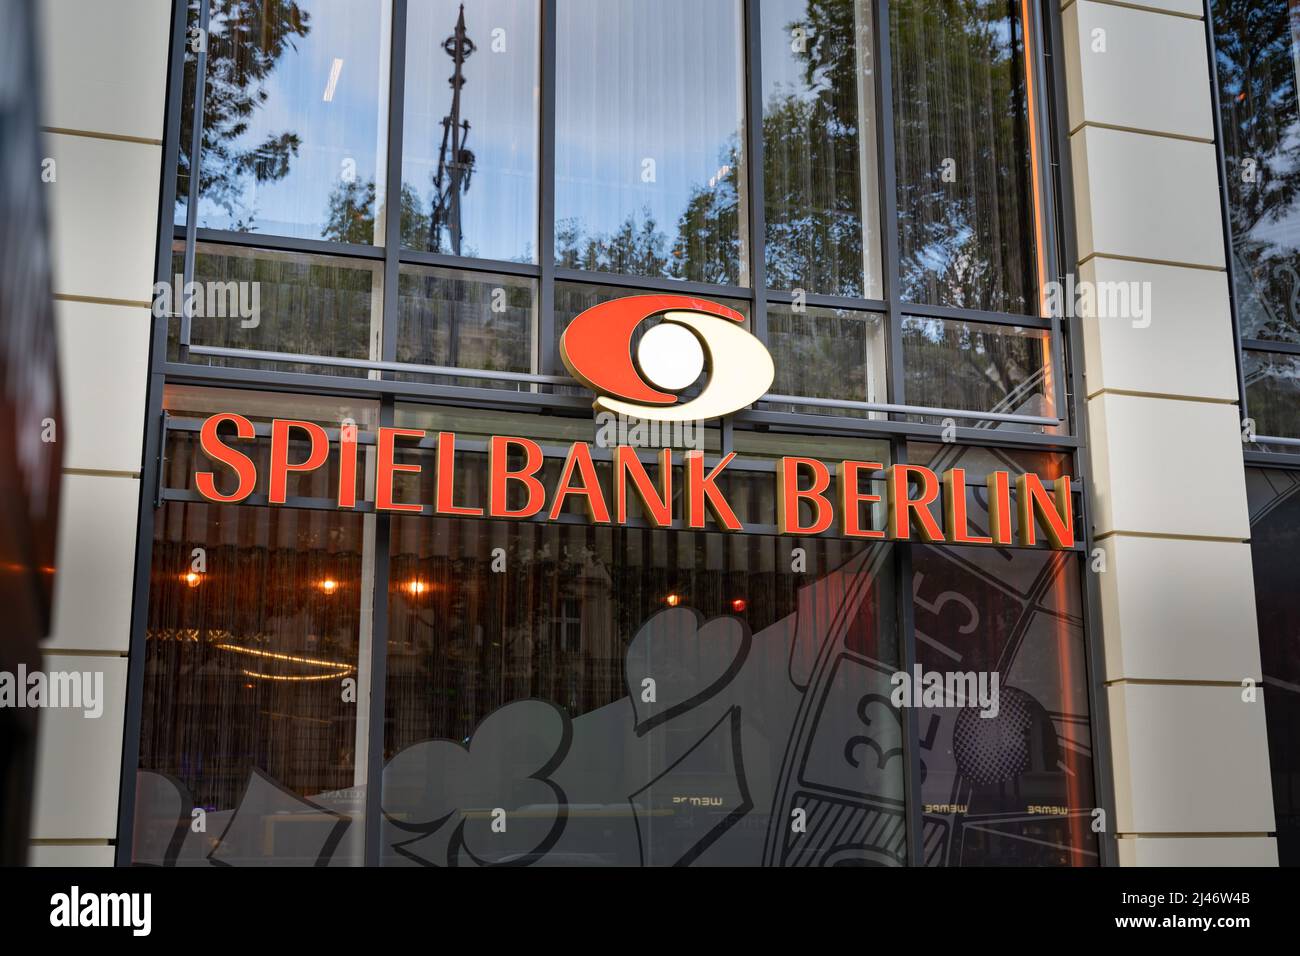 Spielbank Berlin Schild an der Außenseite eines Gebäudes. Casino in der Stadt mit Werbung an der Fassade. Glücksspiel und Unterhaltung in einem städtischen Gebiet. Stockfoto